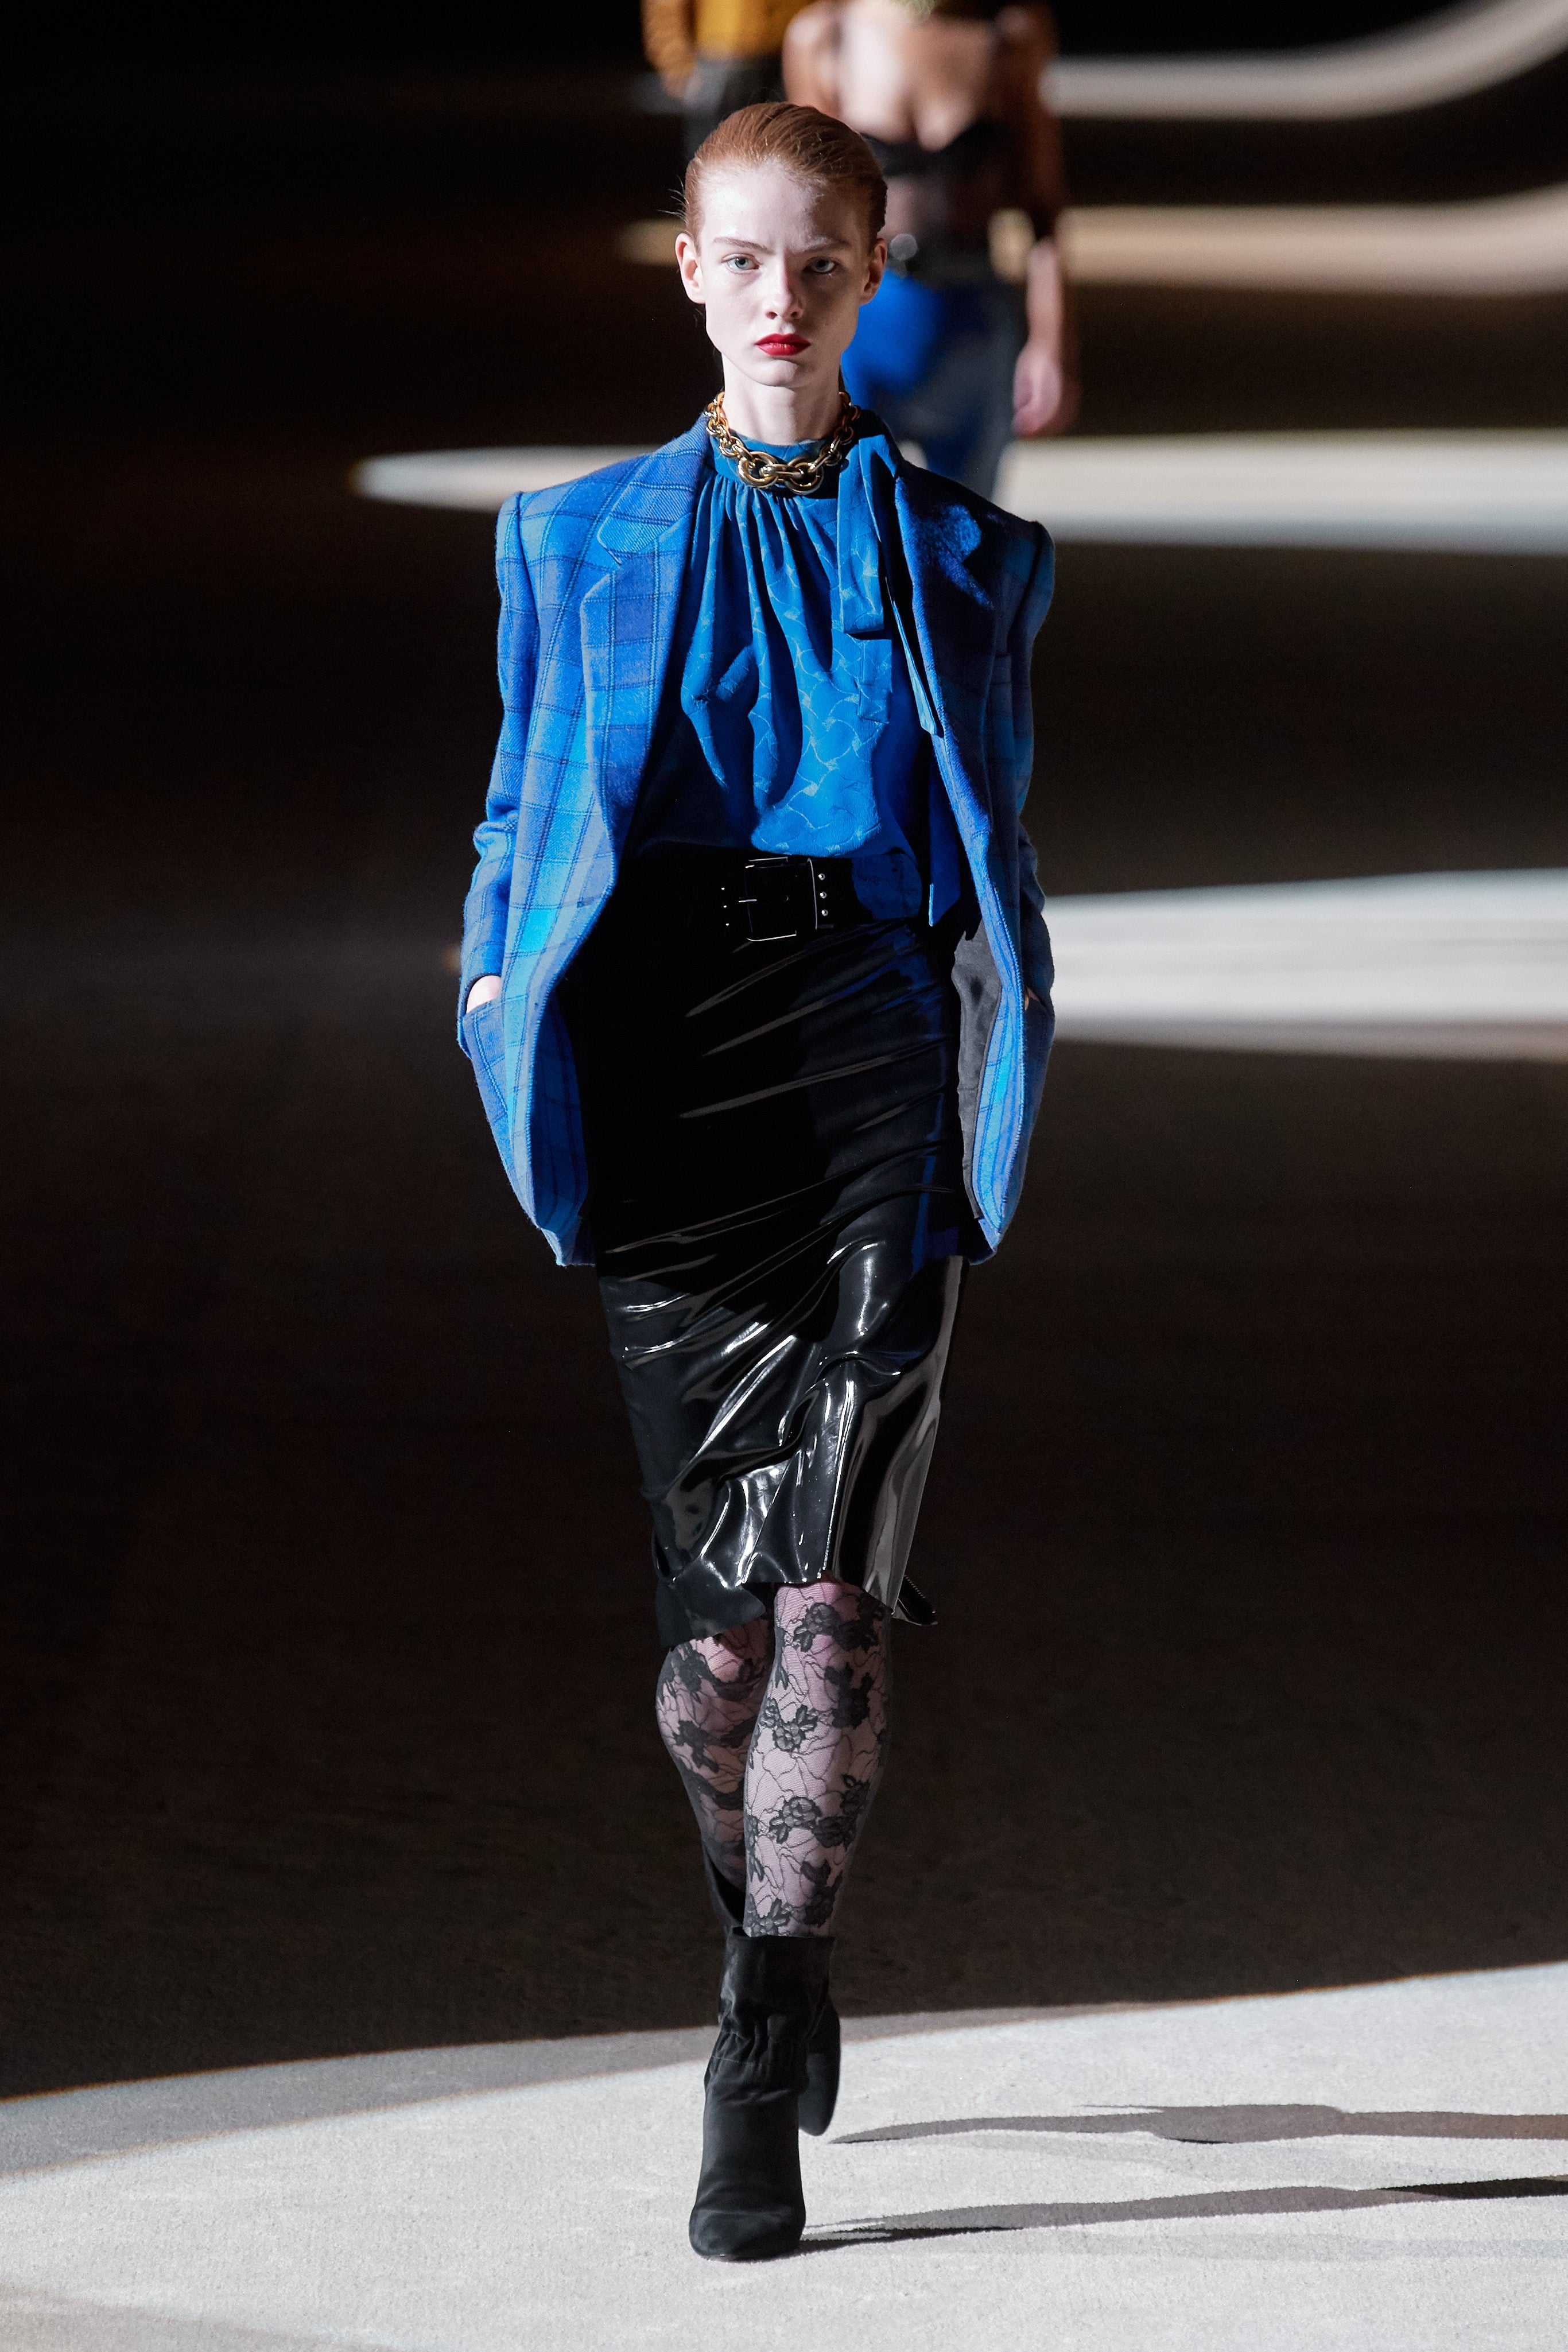 Thời trang nữ quyền của Dior tại Paris Fashion Week - 11